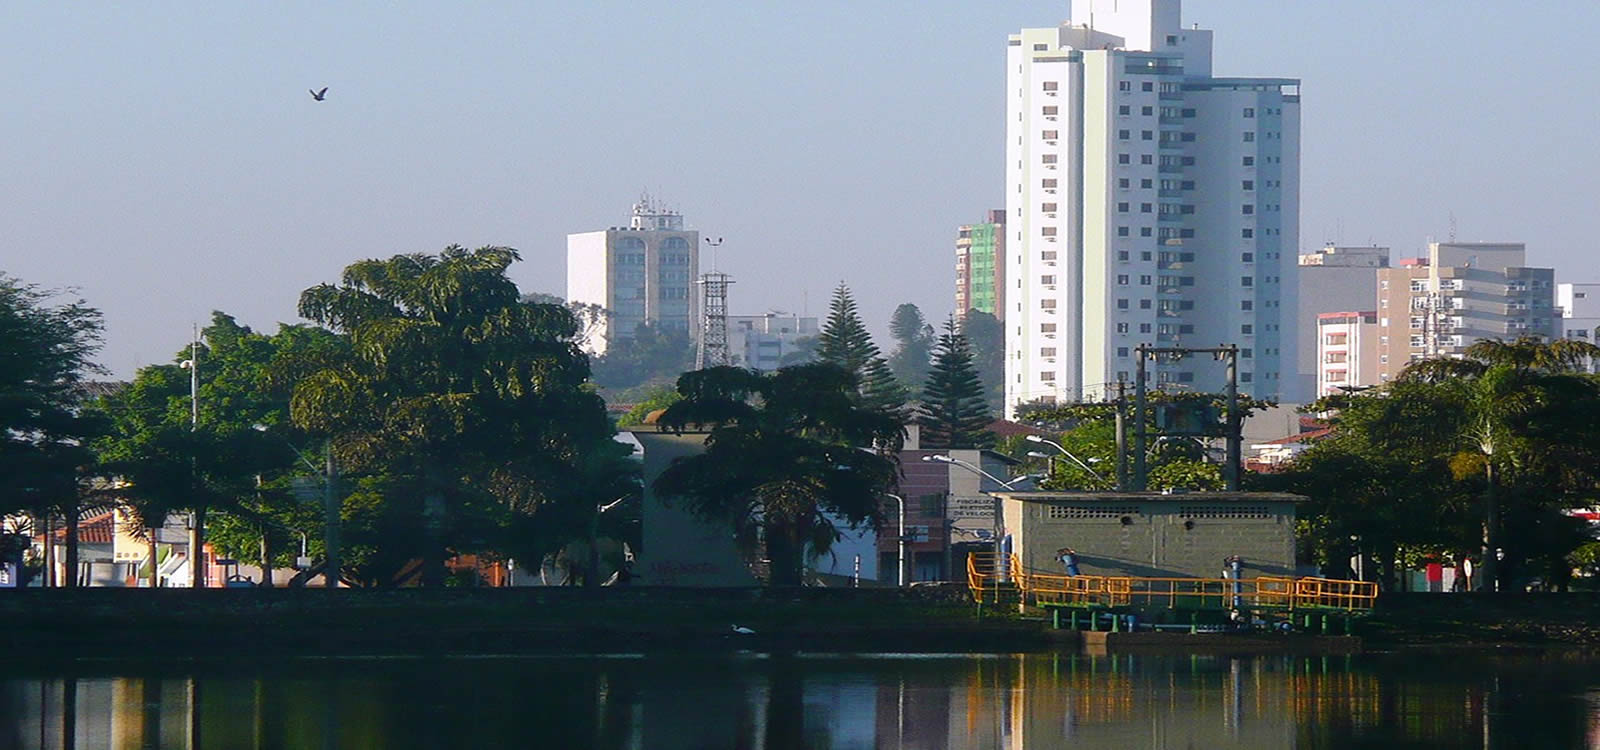 Imóvel Rio Claro – Portal de Imobiliárias